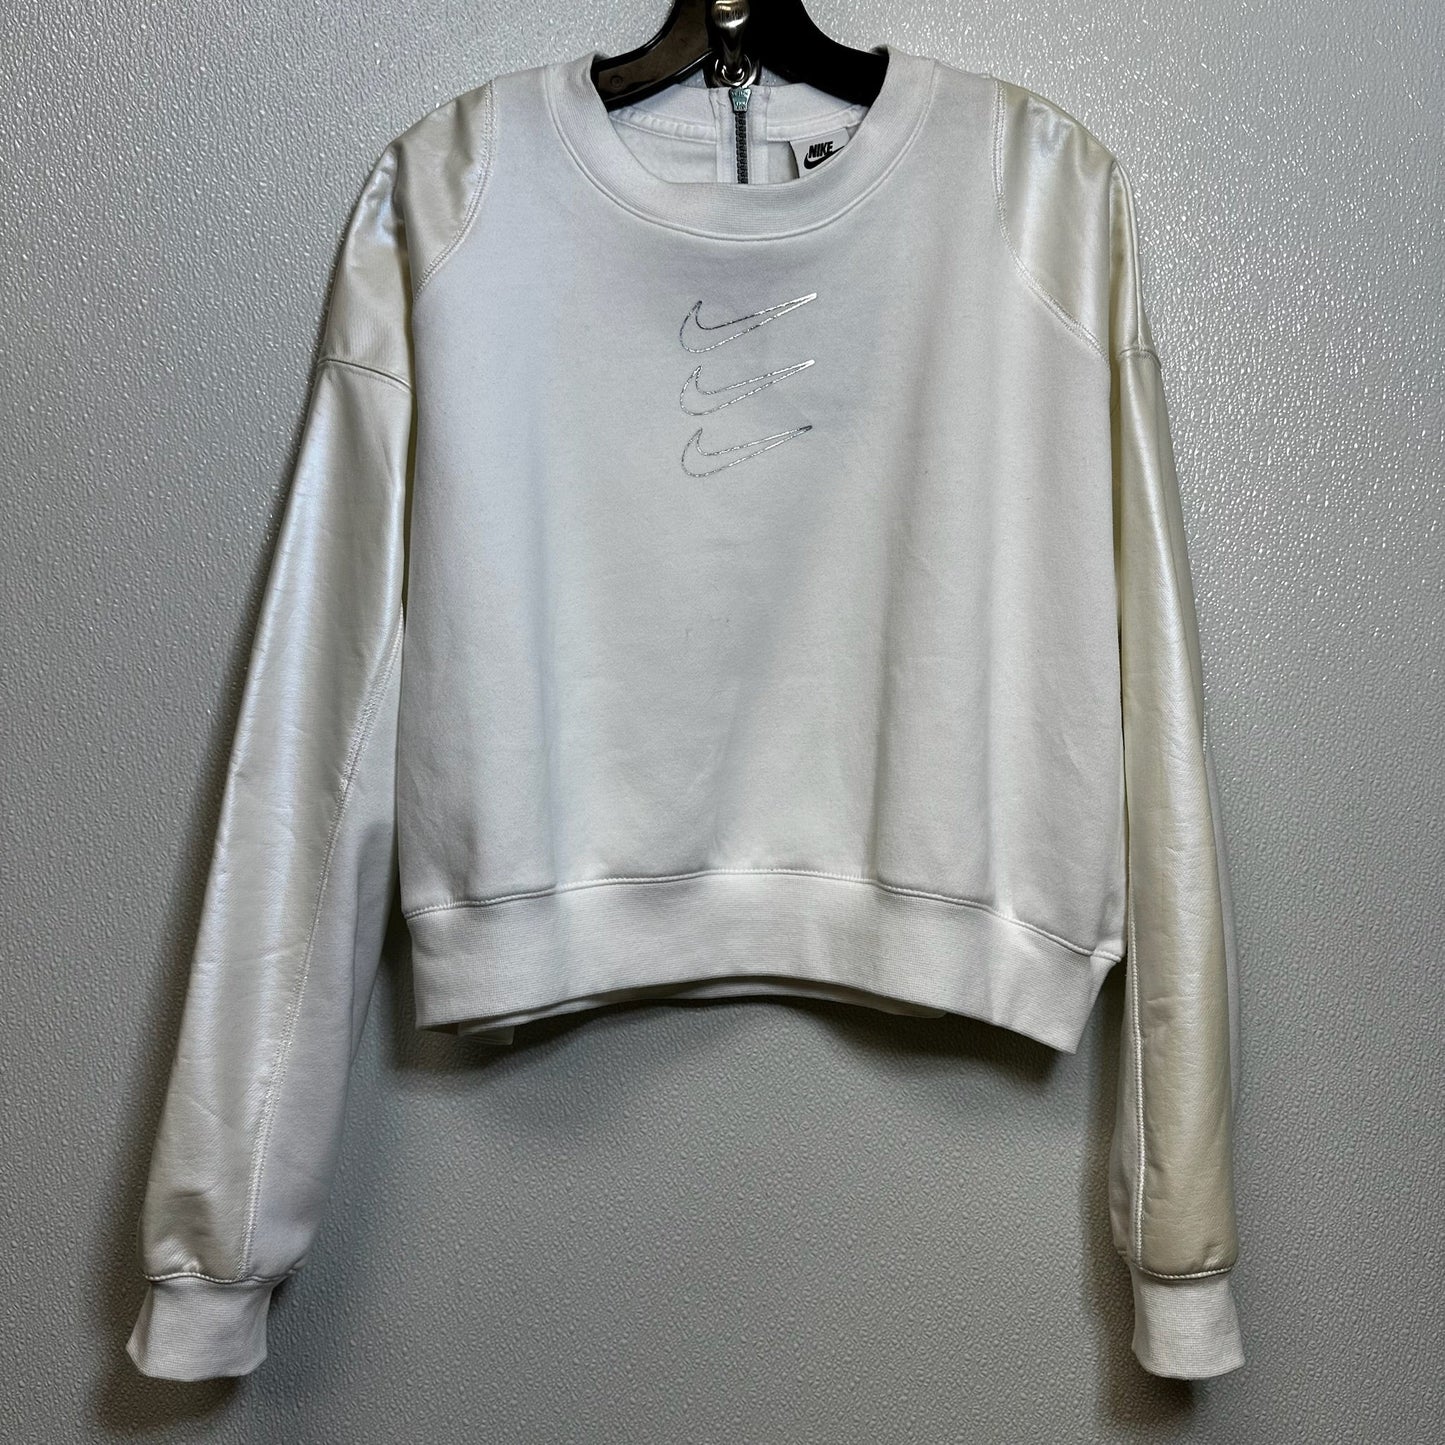 White Sweatshirt Crewneck Nike Apparel, Size L